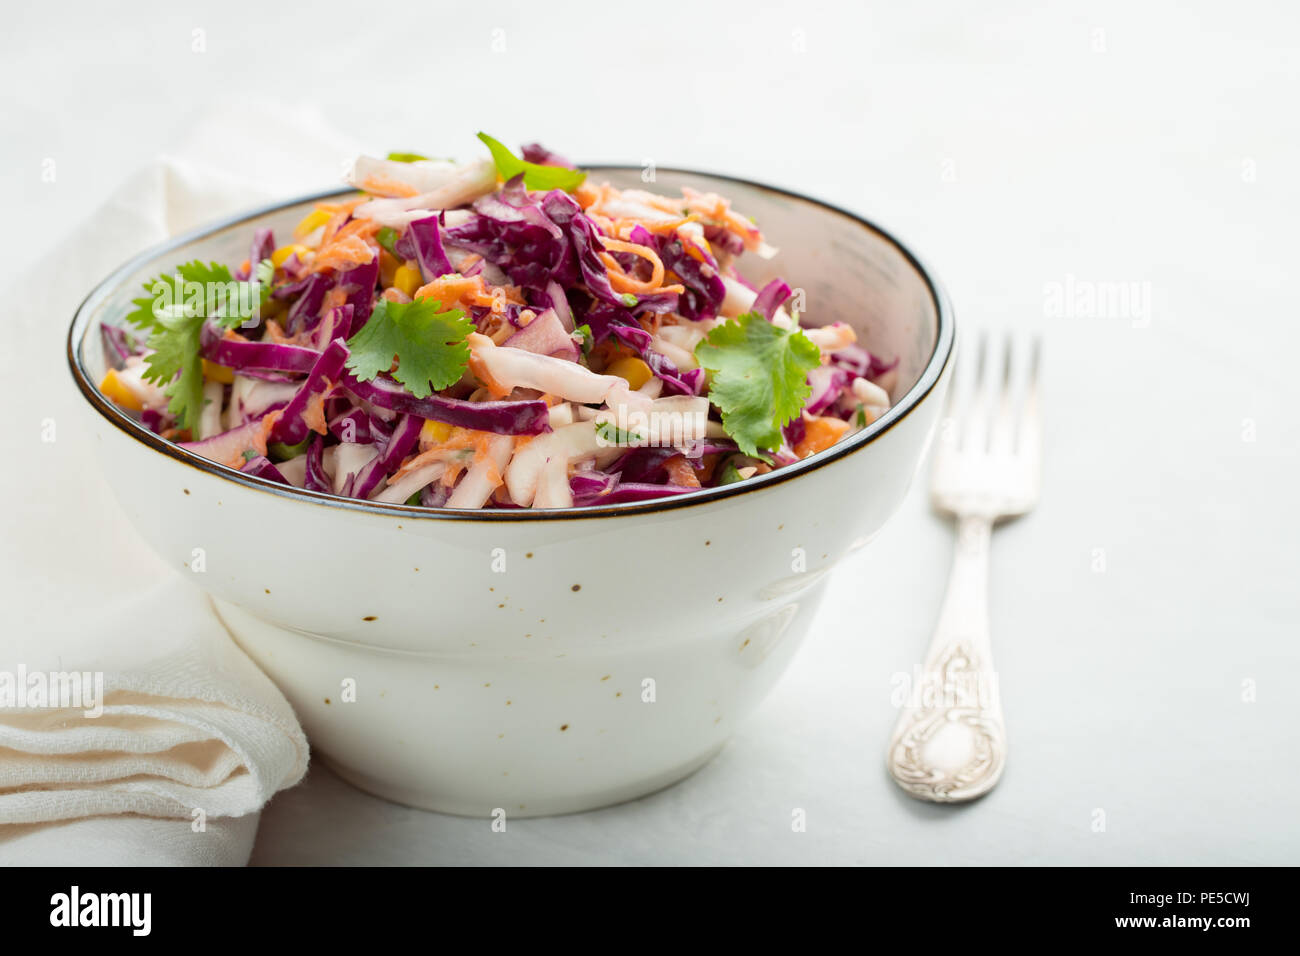 Salade de carottes et de chou violet avec de la mayonnaise dans un bol blanc sur fond clair. Classic de choux. Le régime alimentaire plat végétarien. Copy space Banque D'Images